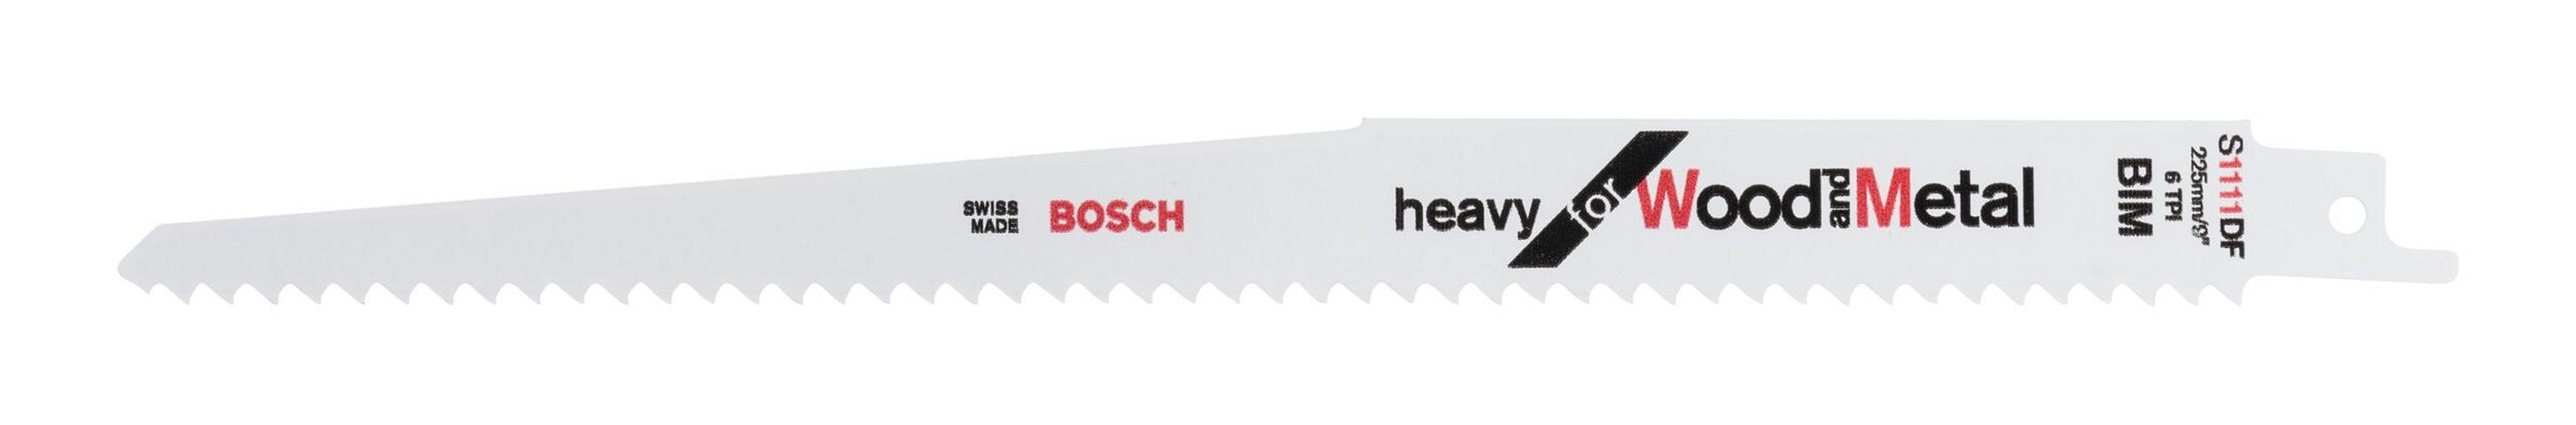 for Wood DF Heavy - 1111 (2 Säbelsägeblatt S Stück), BOSCH and Metal 2er-Pack